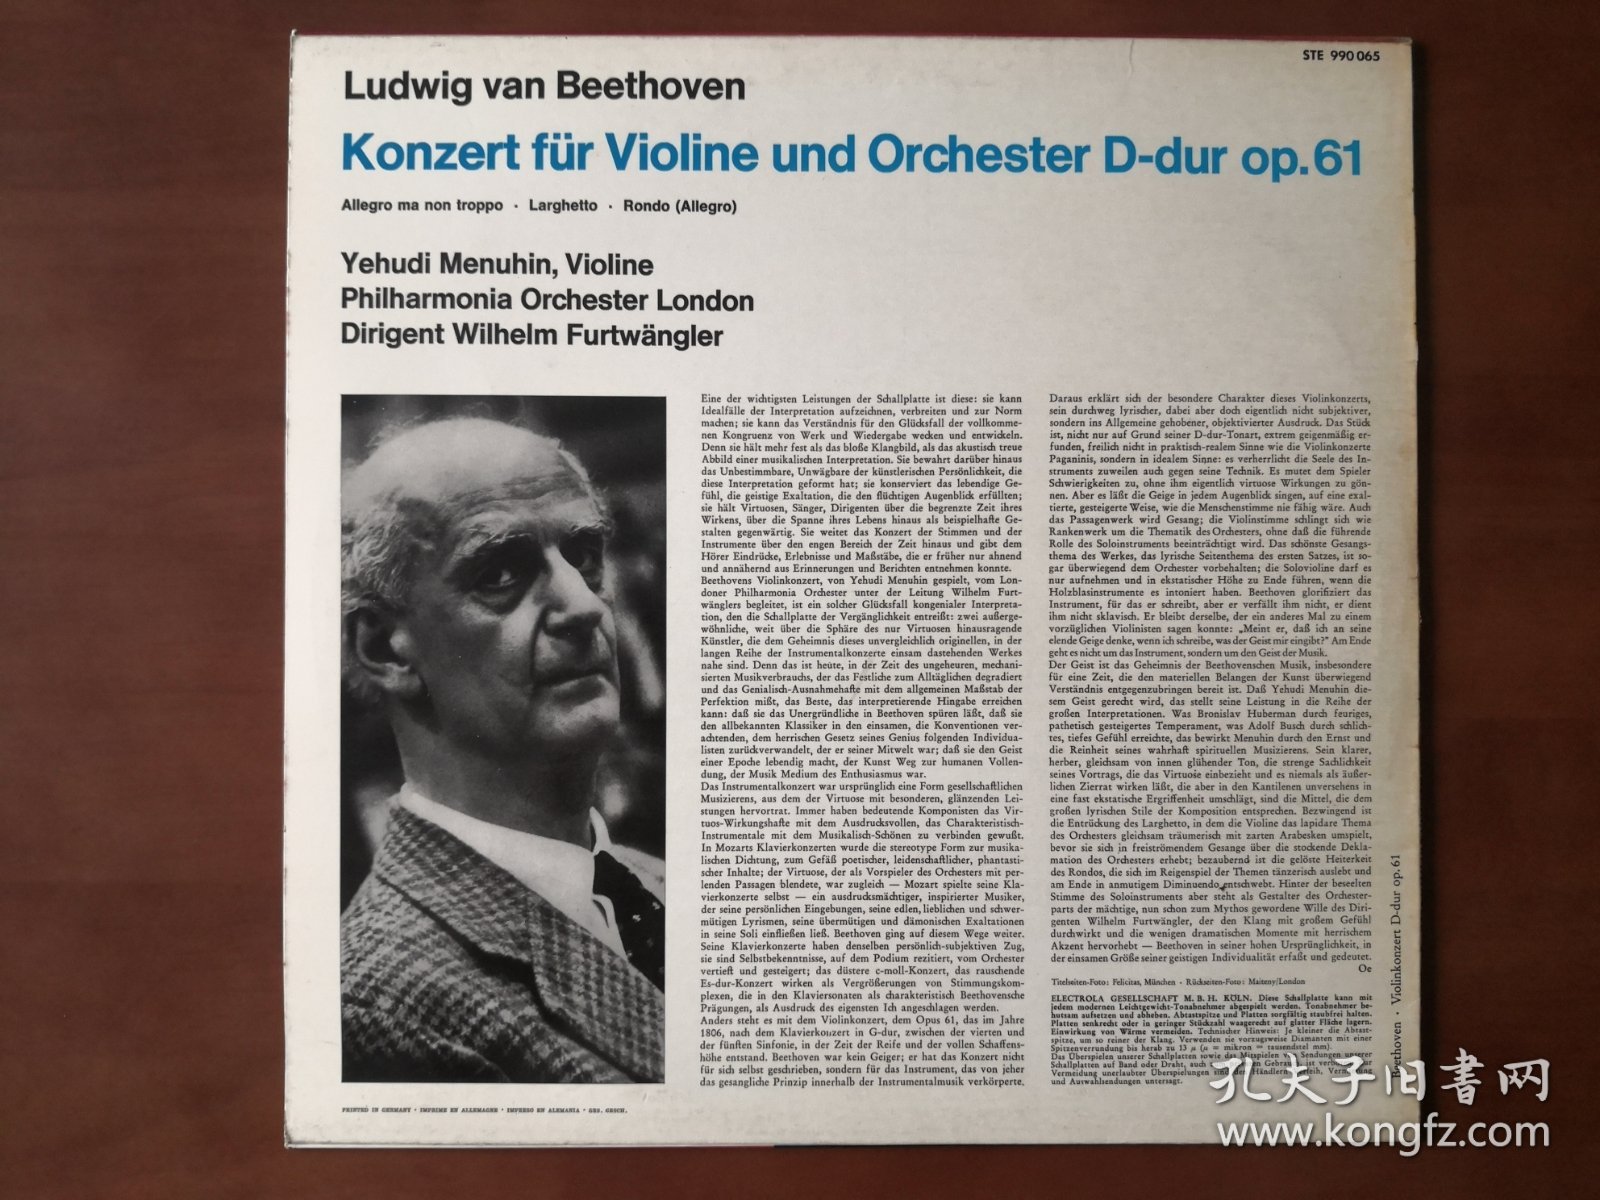 贝多芬、莫扎特小提琴协奏曲 黑胶LP唱片双张 包邮